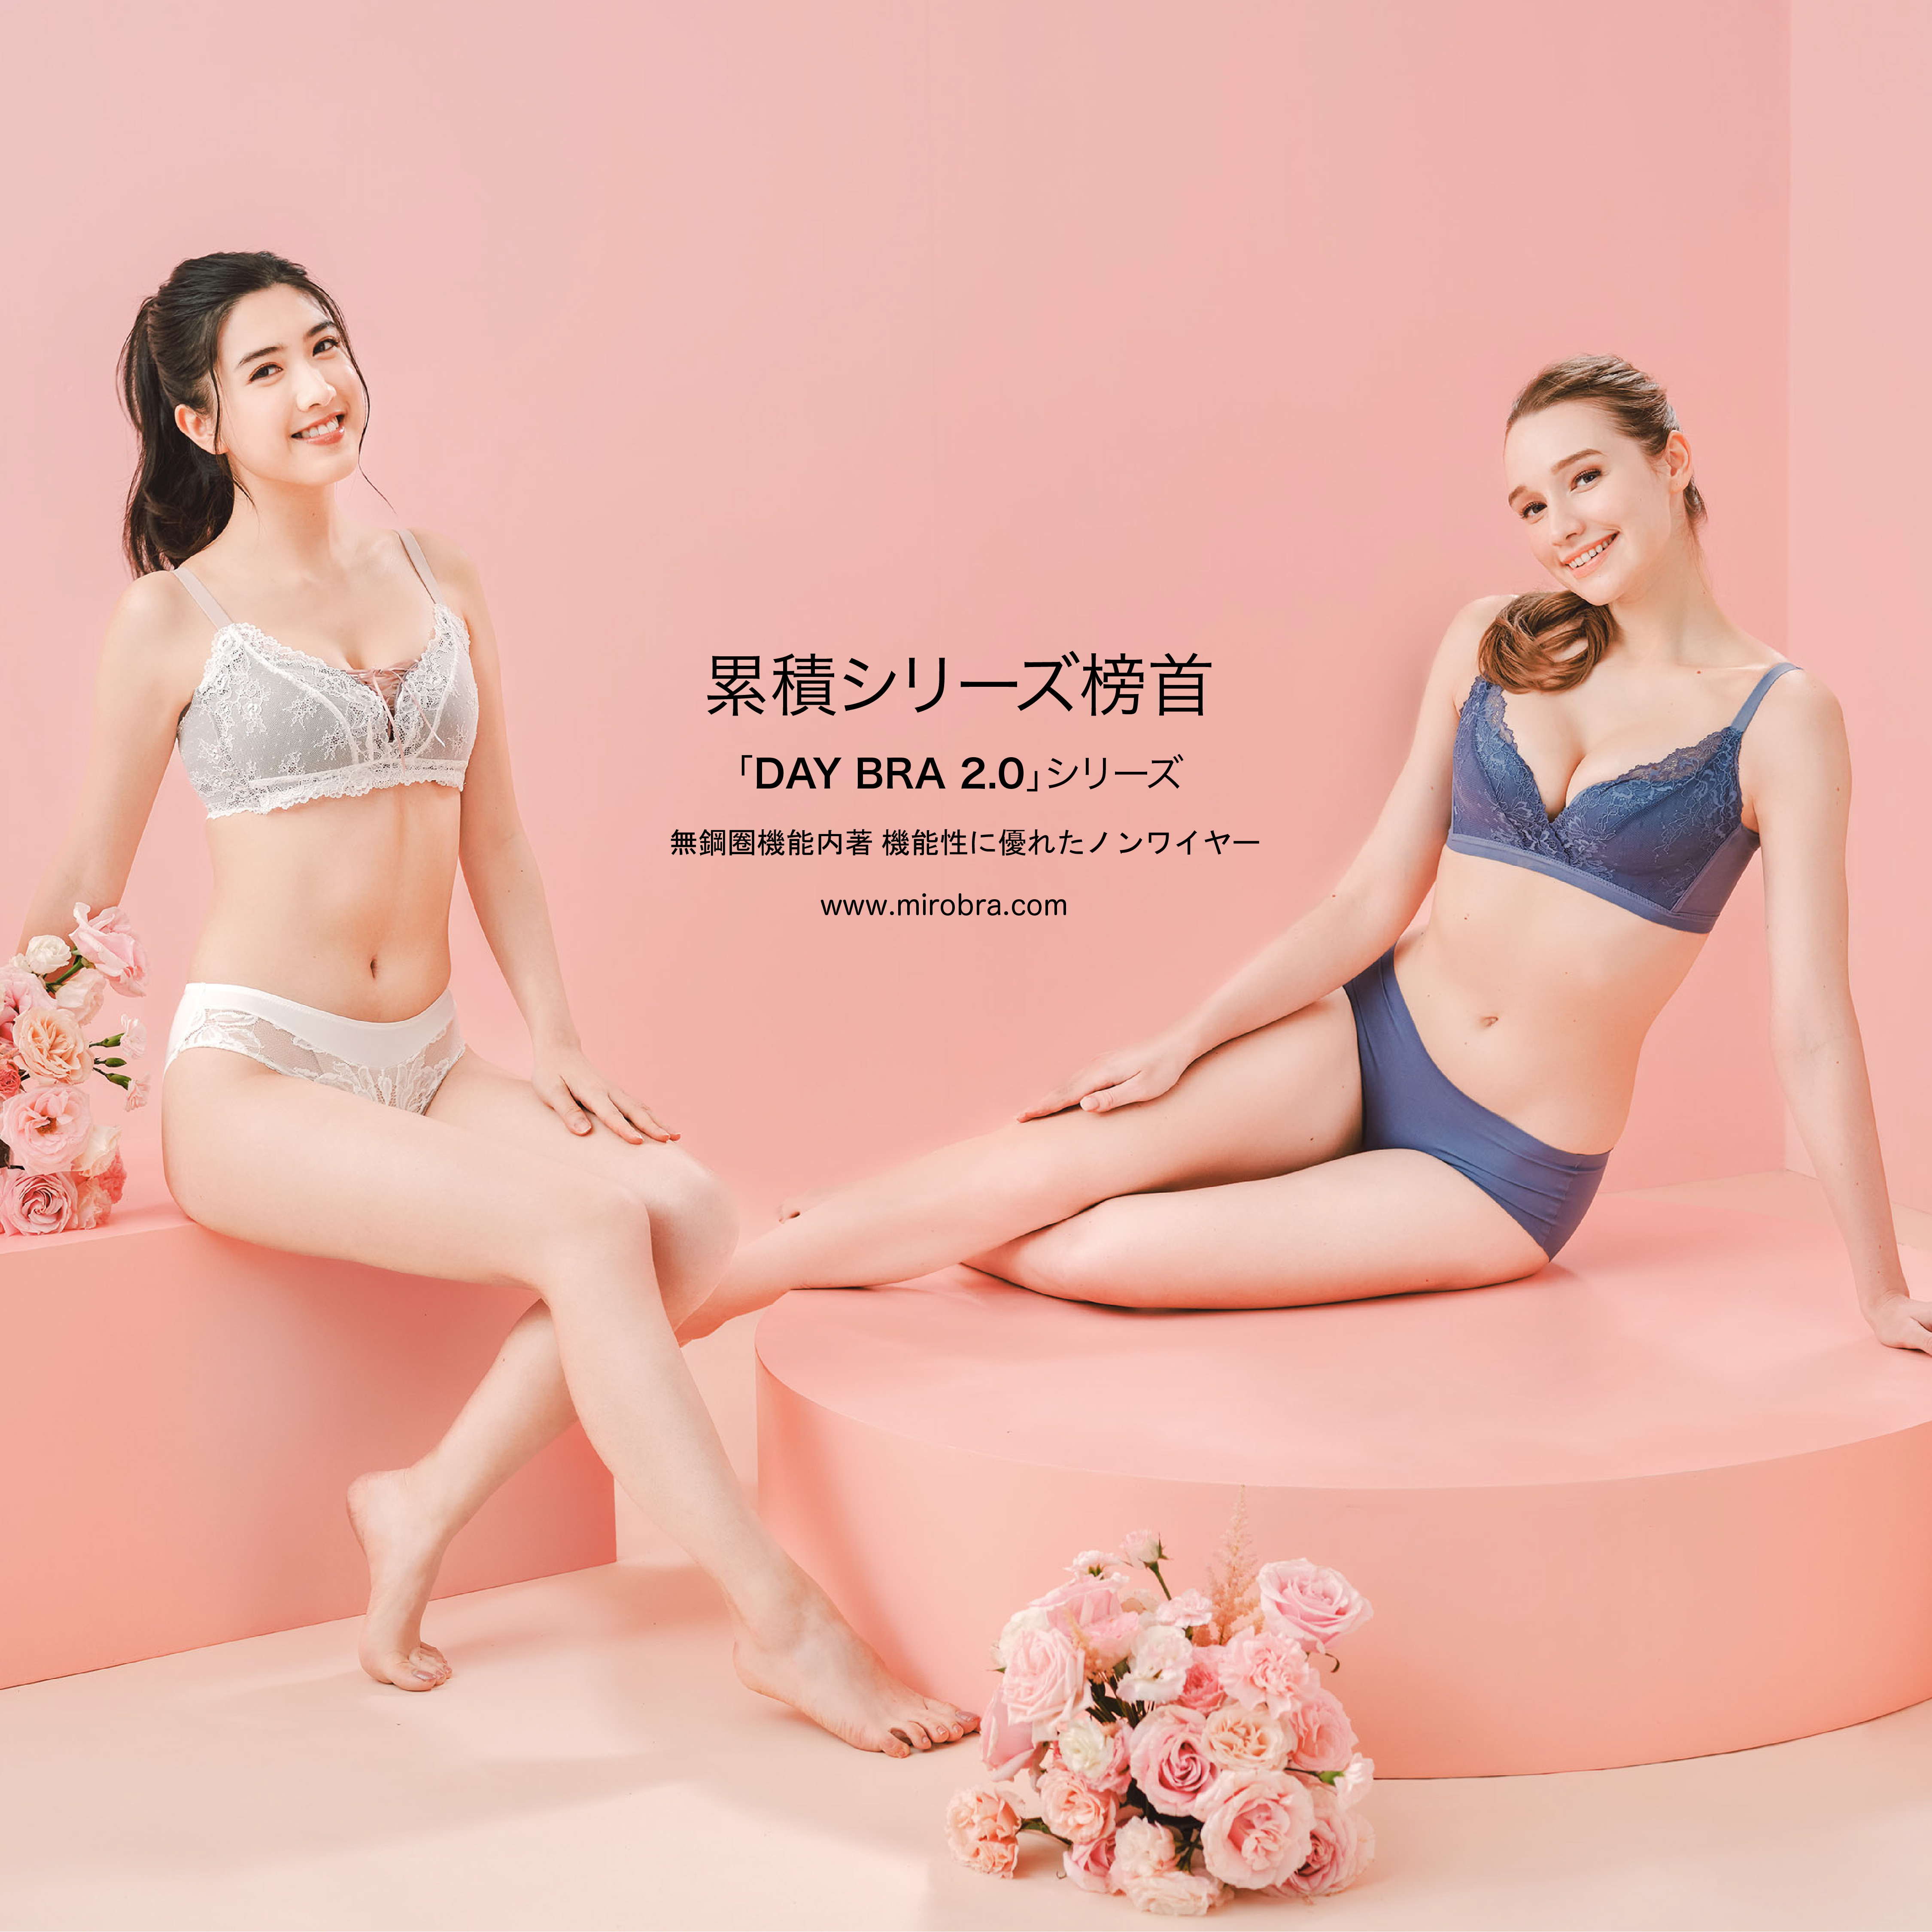 日本矯形内衣品牌 專屬香港女性胸圍設計- MIRO Bra